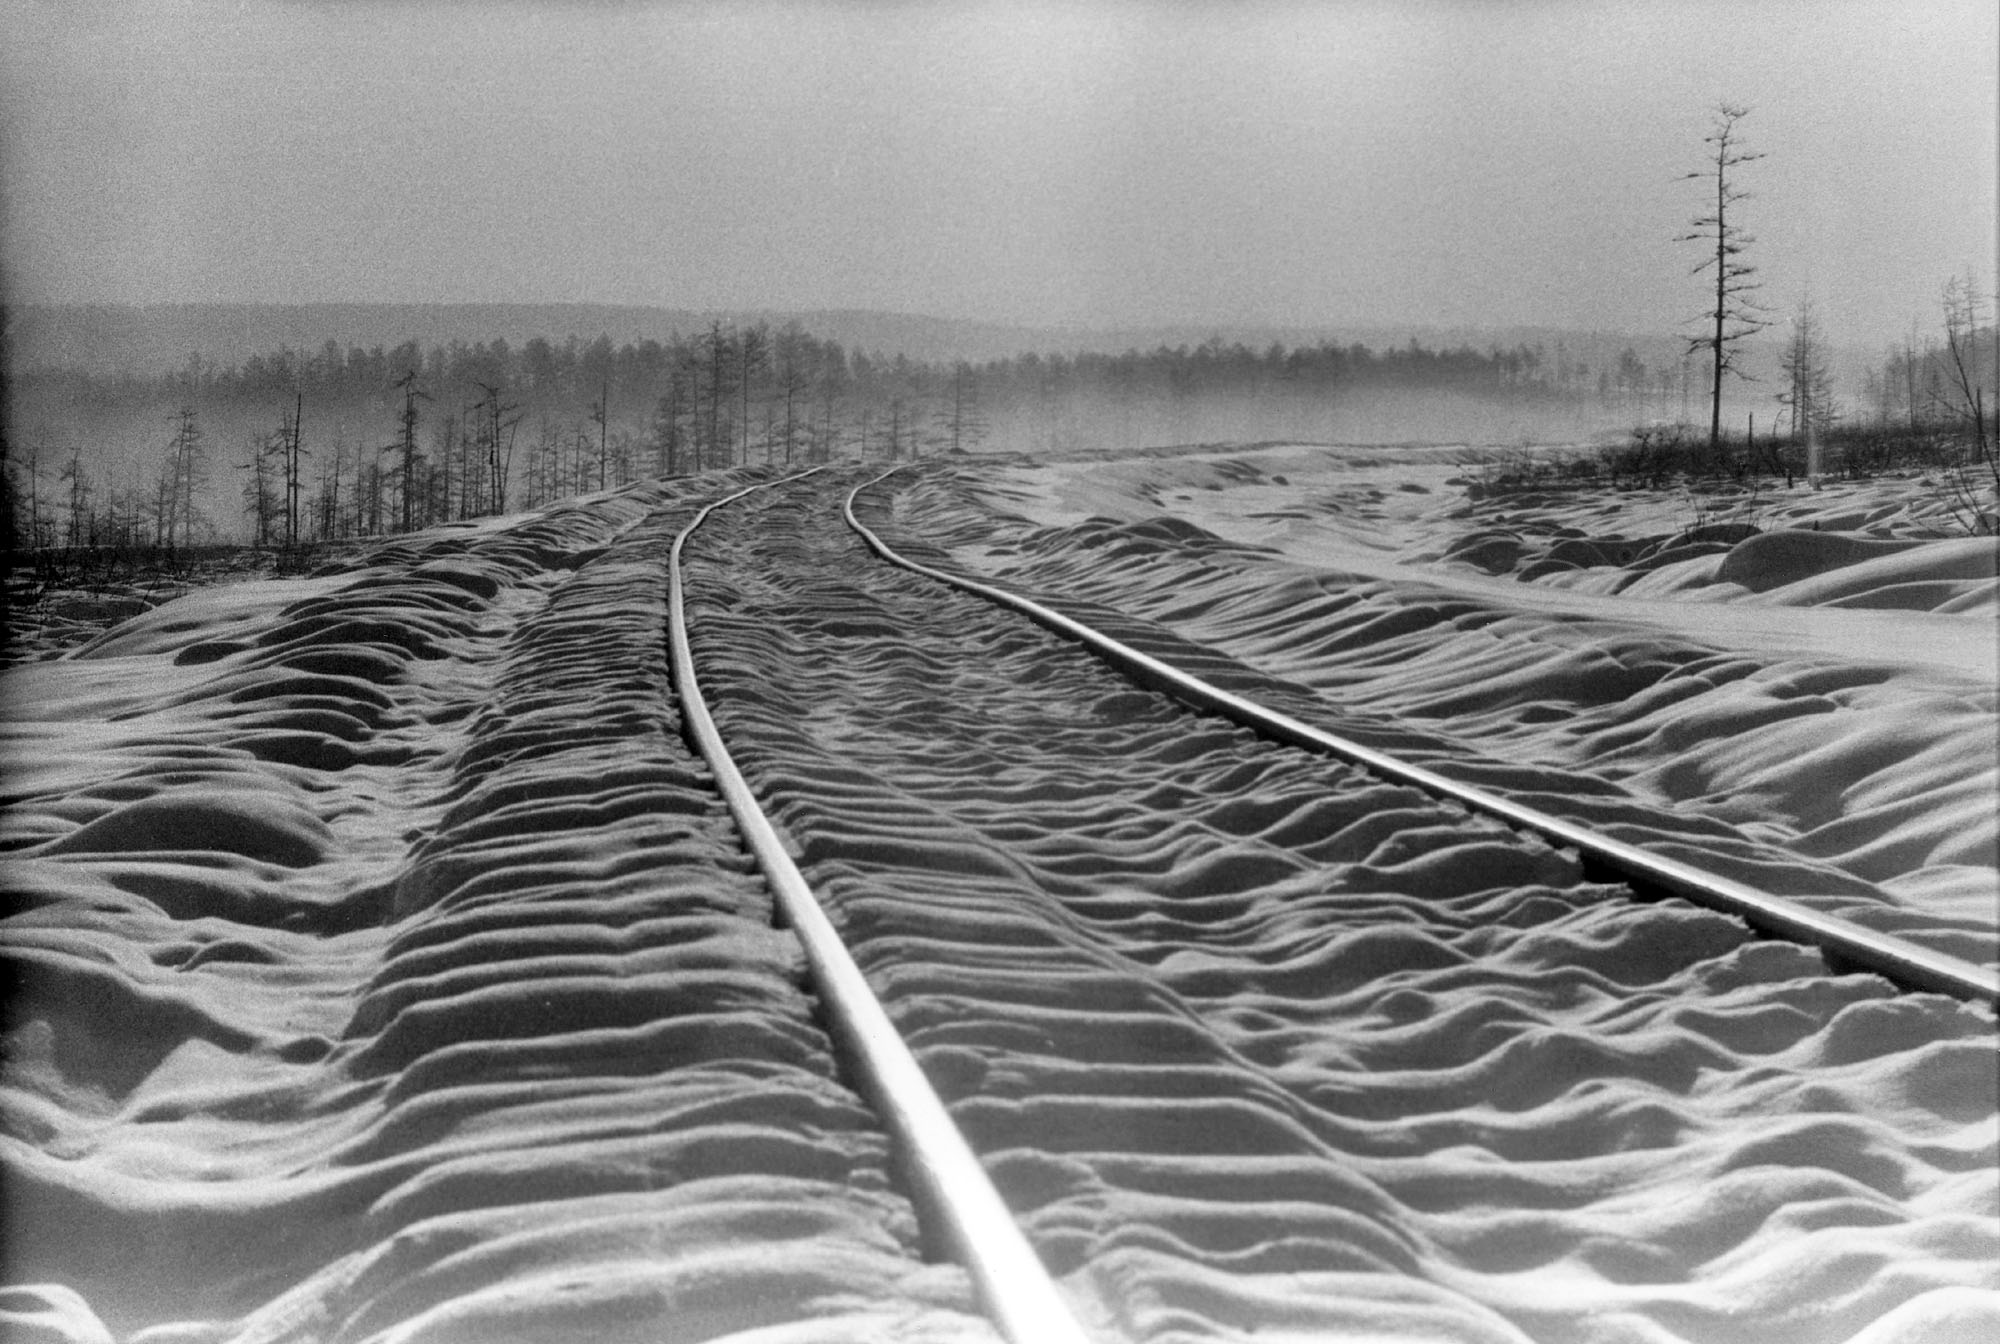 trans-siberia railroad